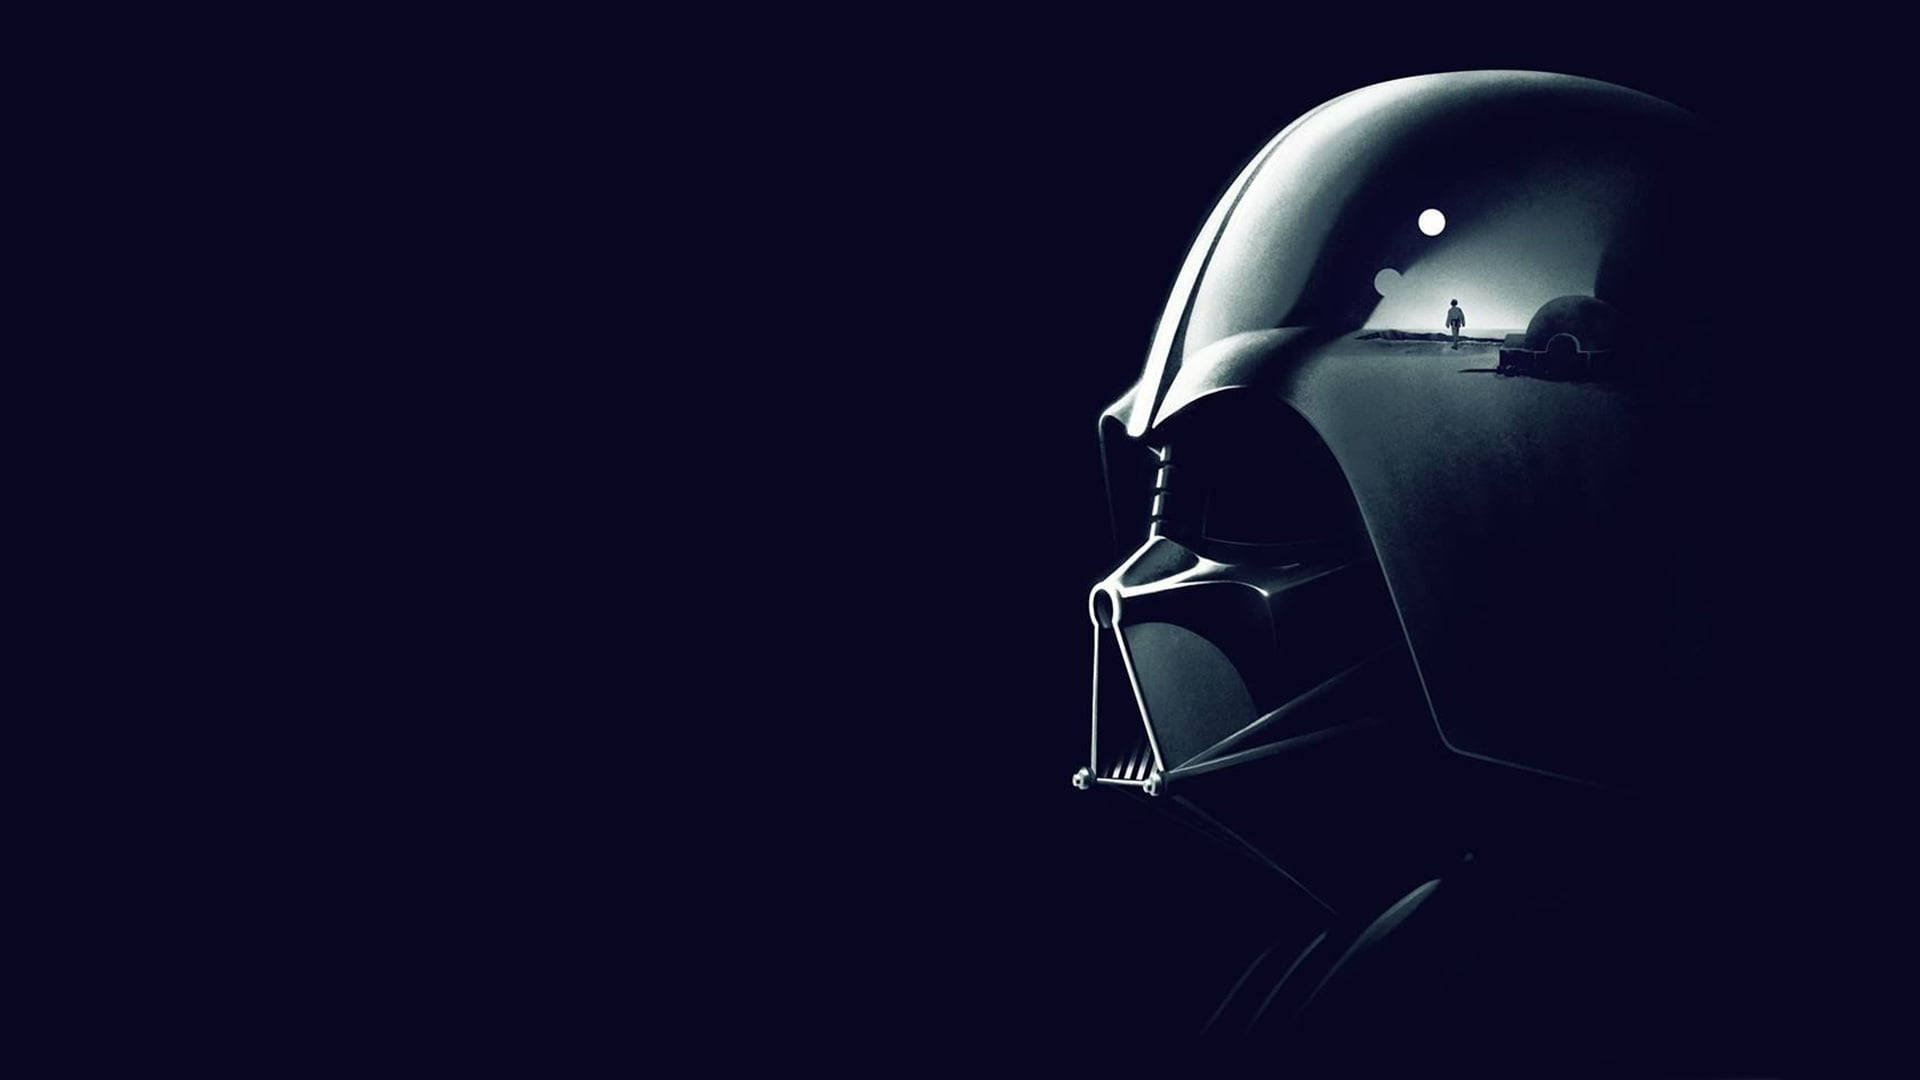 Cool Darth Vader Of Star Wars Tablet Wallpaper